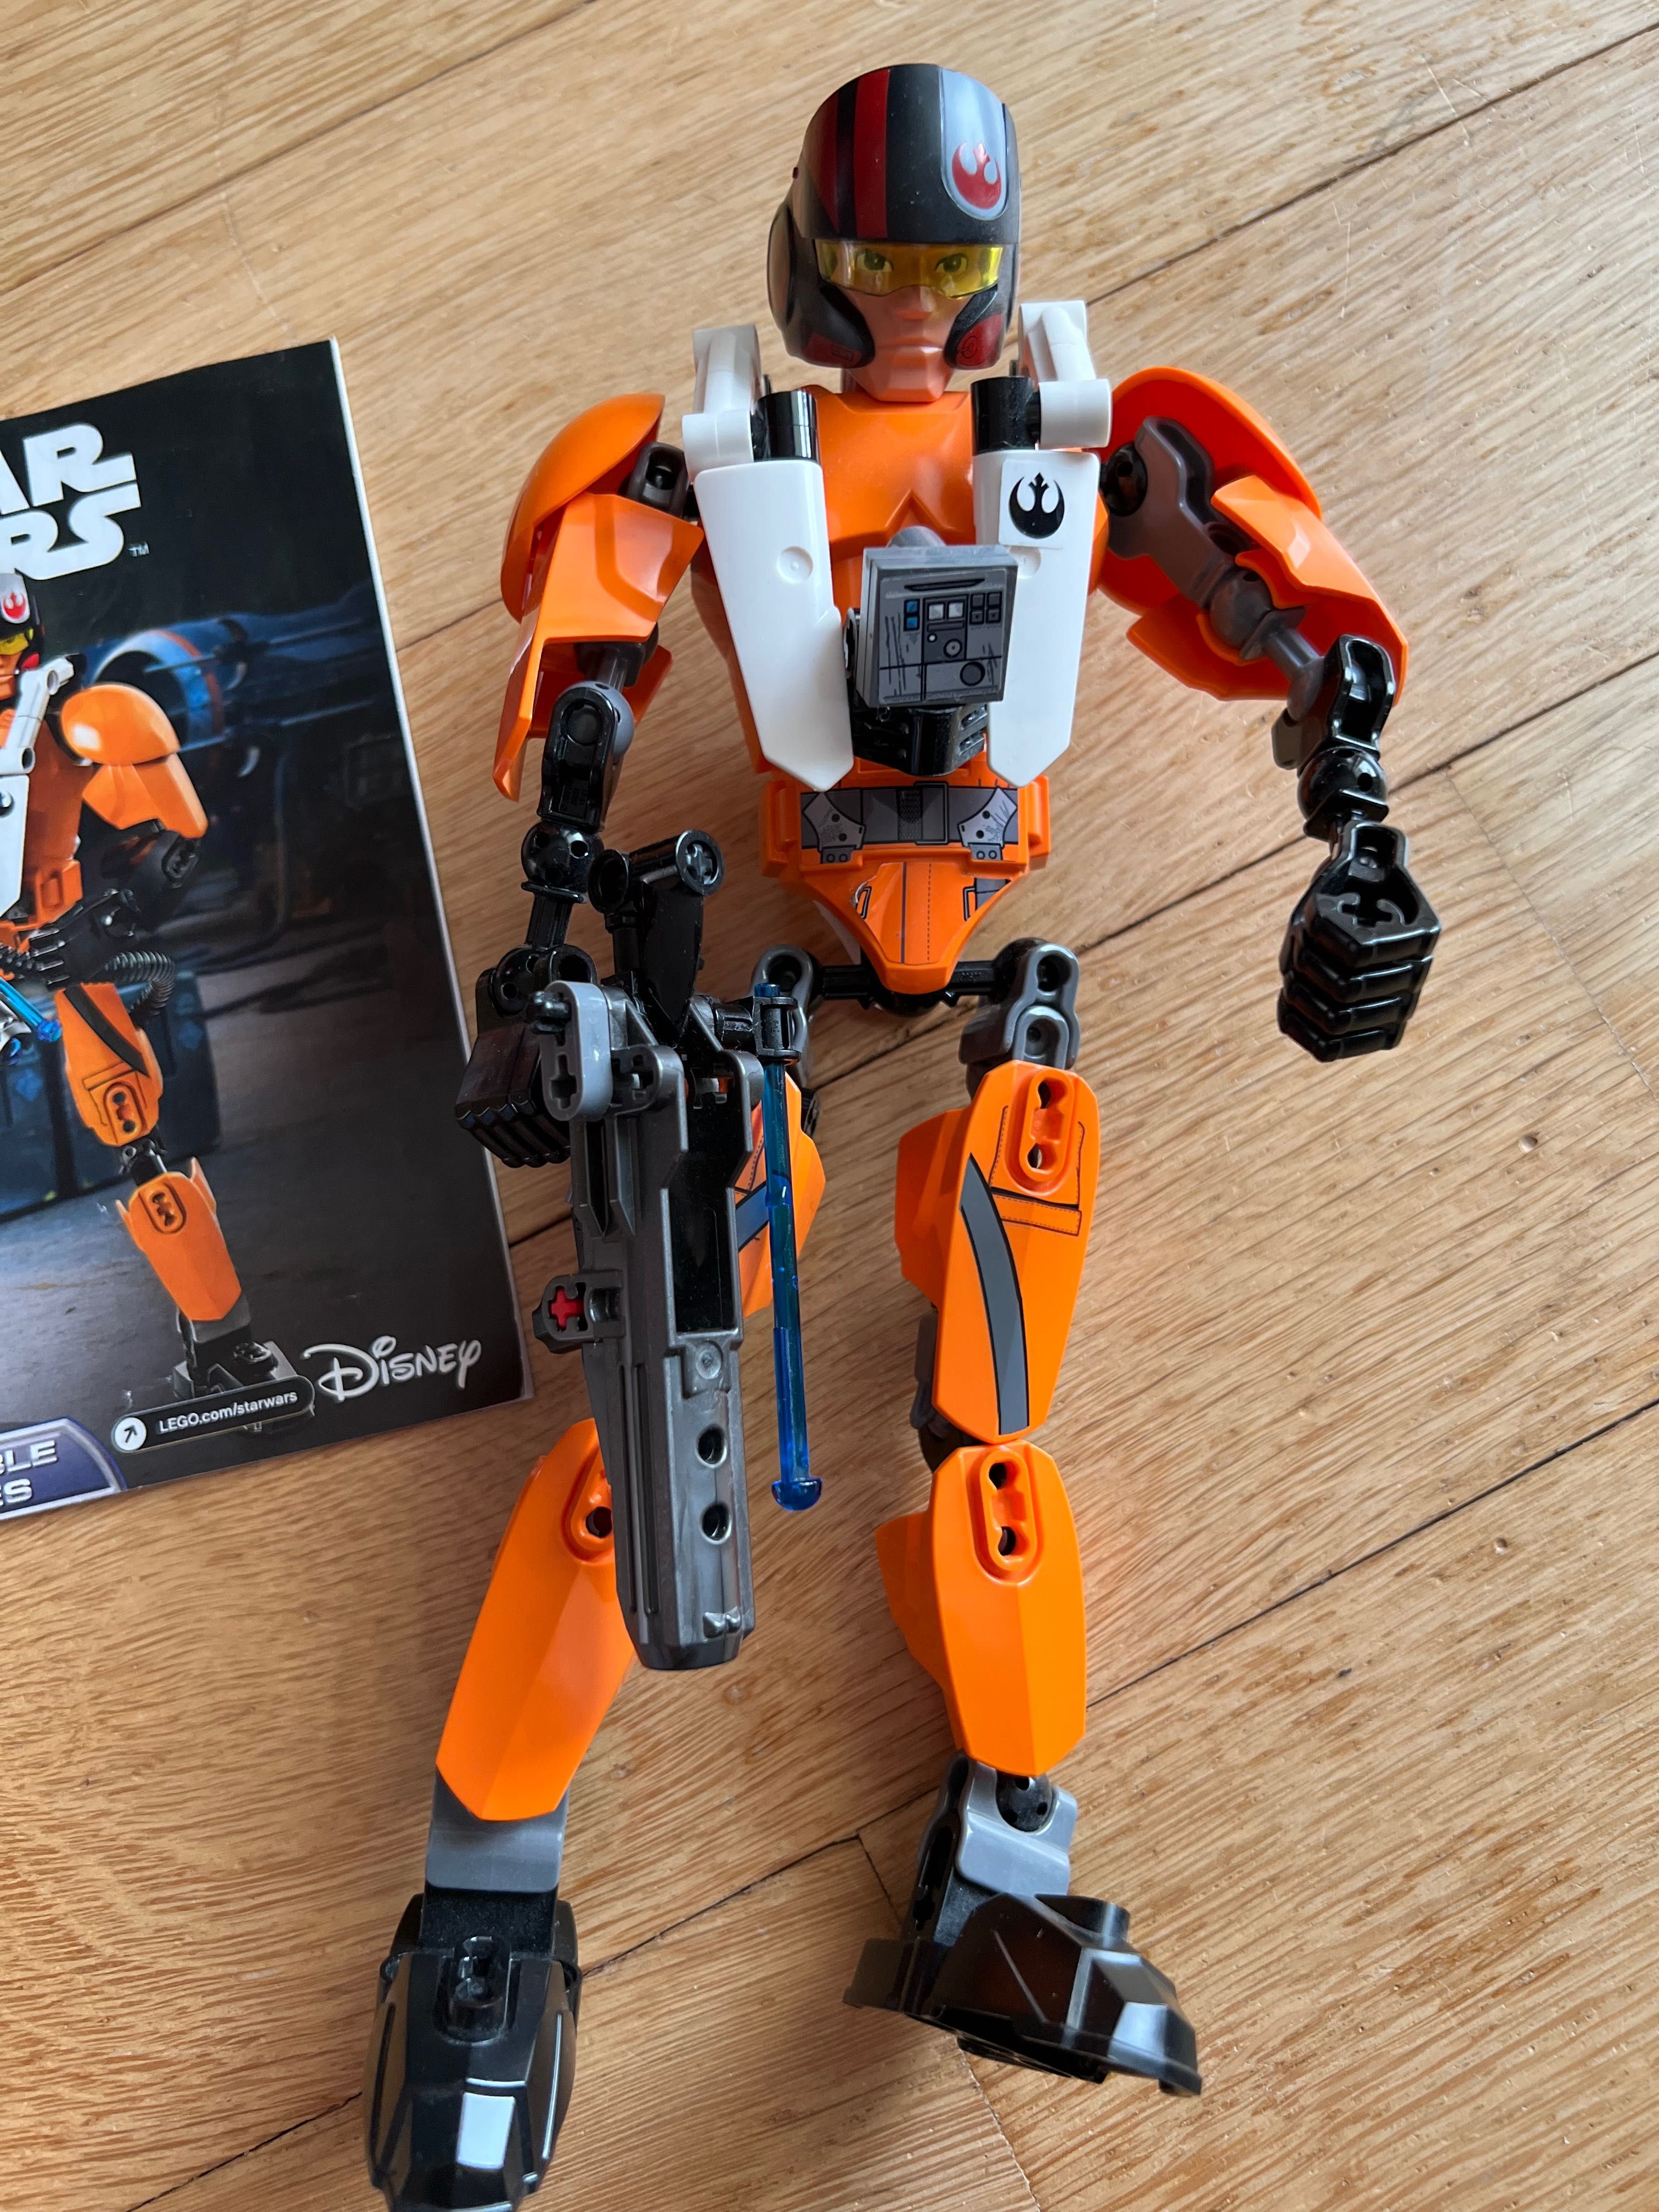 Lego Star Wars 75115